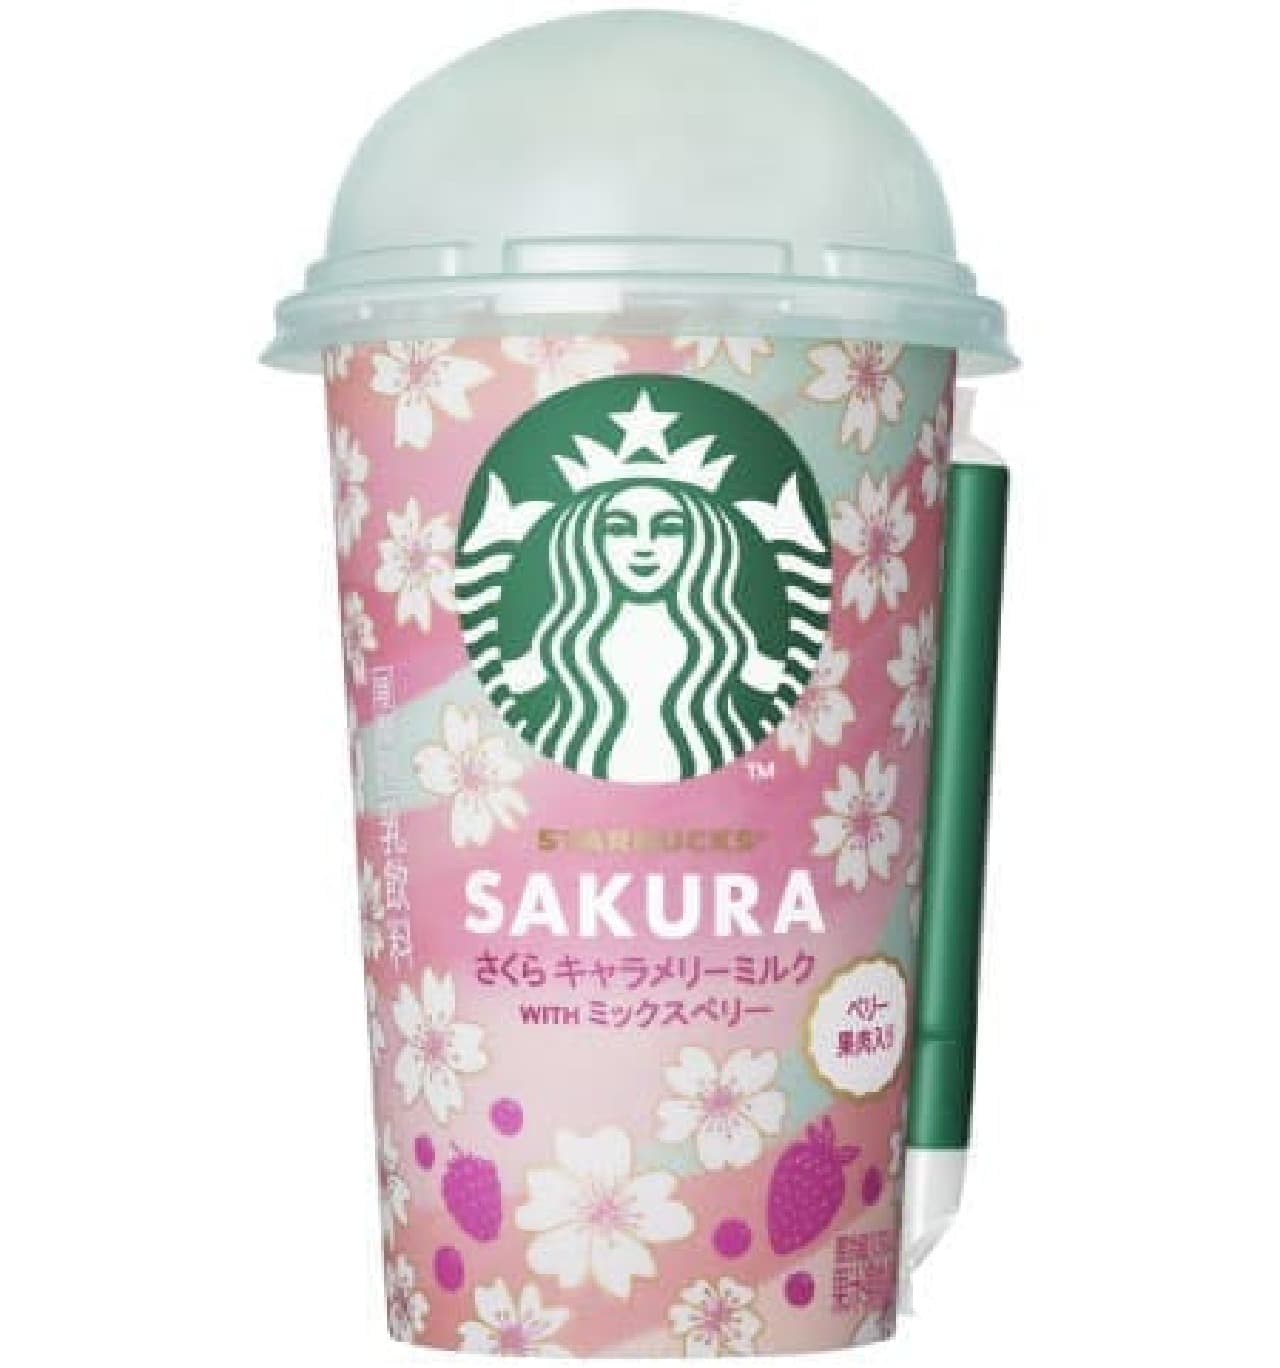 Suntory "Starbucks Sakura Chara Merry Milk WITH Mixed Berry"